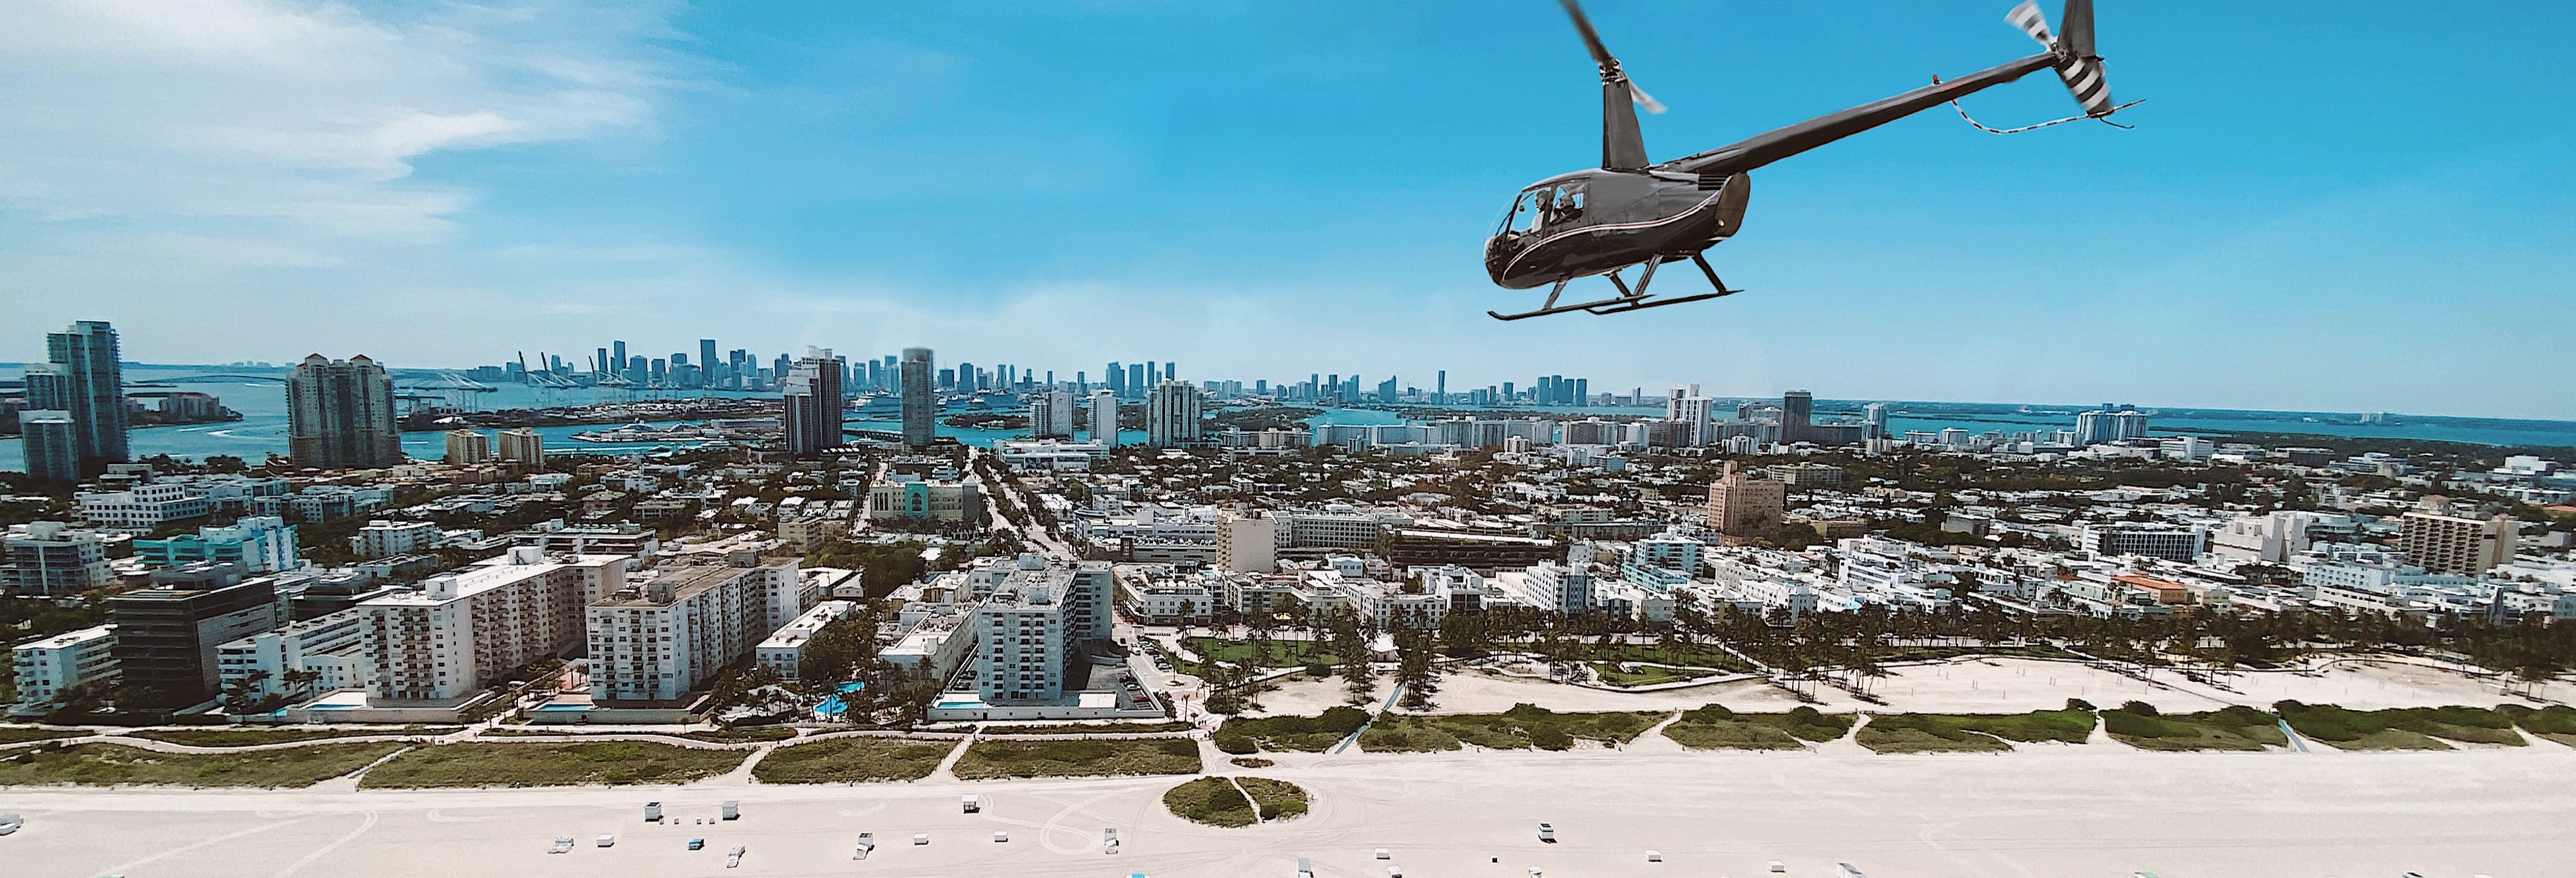 Vol en hélicoptère au-dessus de Miami